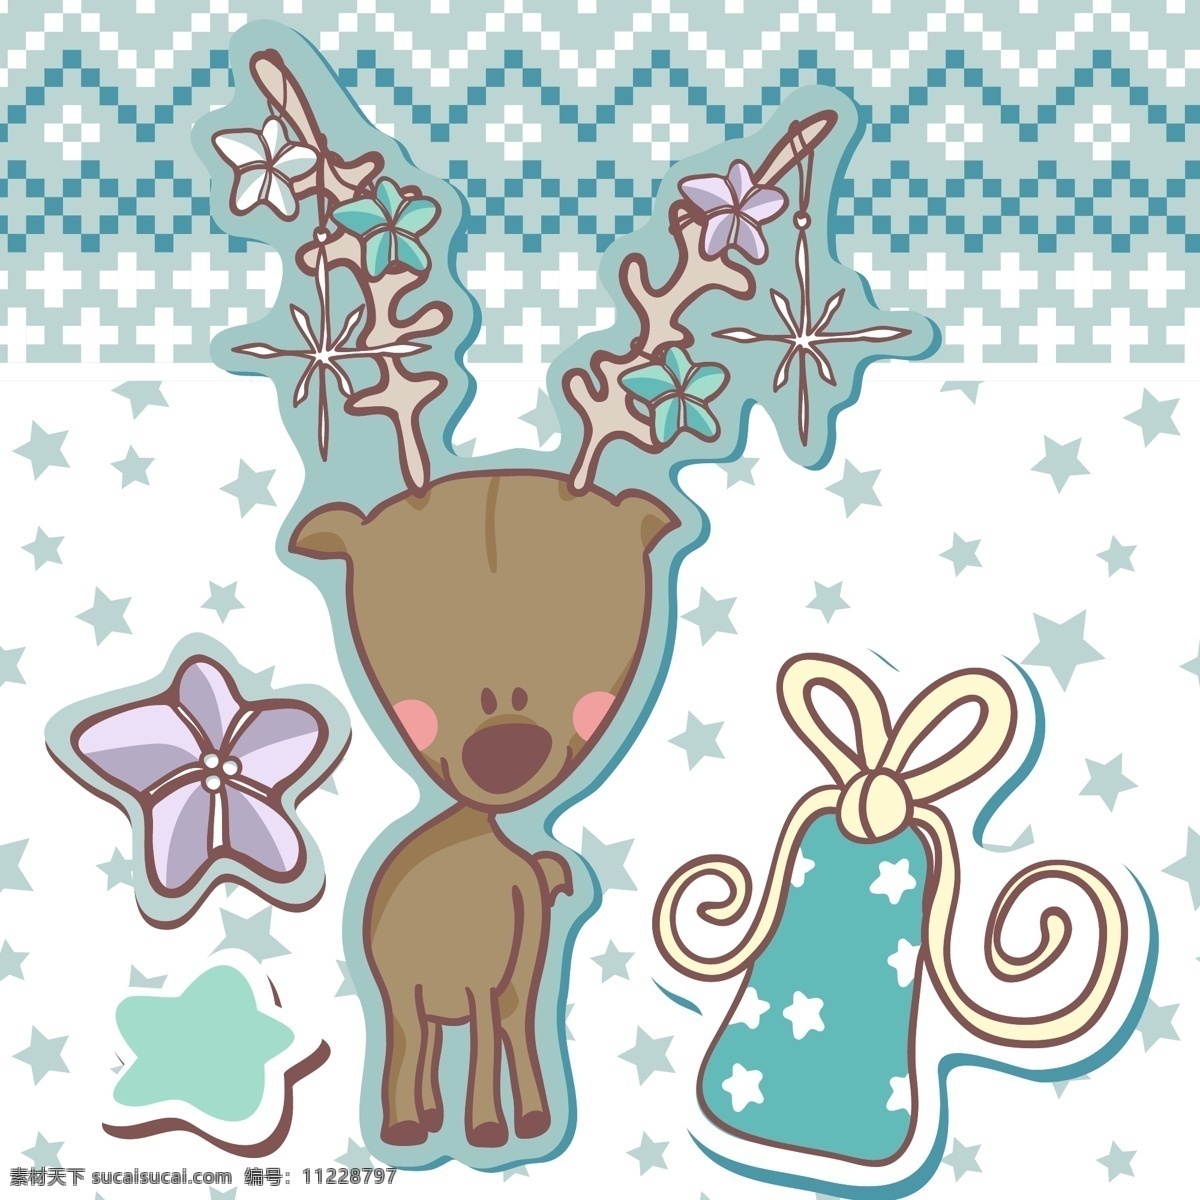 印花 矢量图 动物 服装图案 节日喜庆 圣诞节 驯鹿 印花矢量图 面料图库 服装设计 图案花型